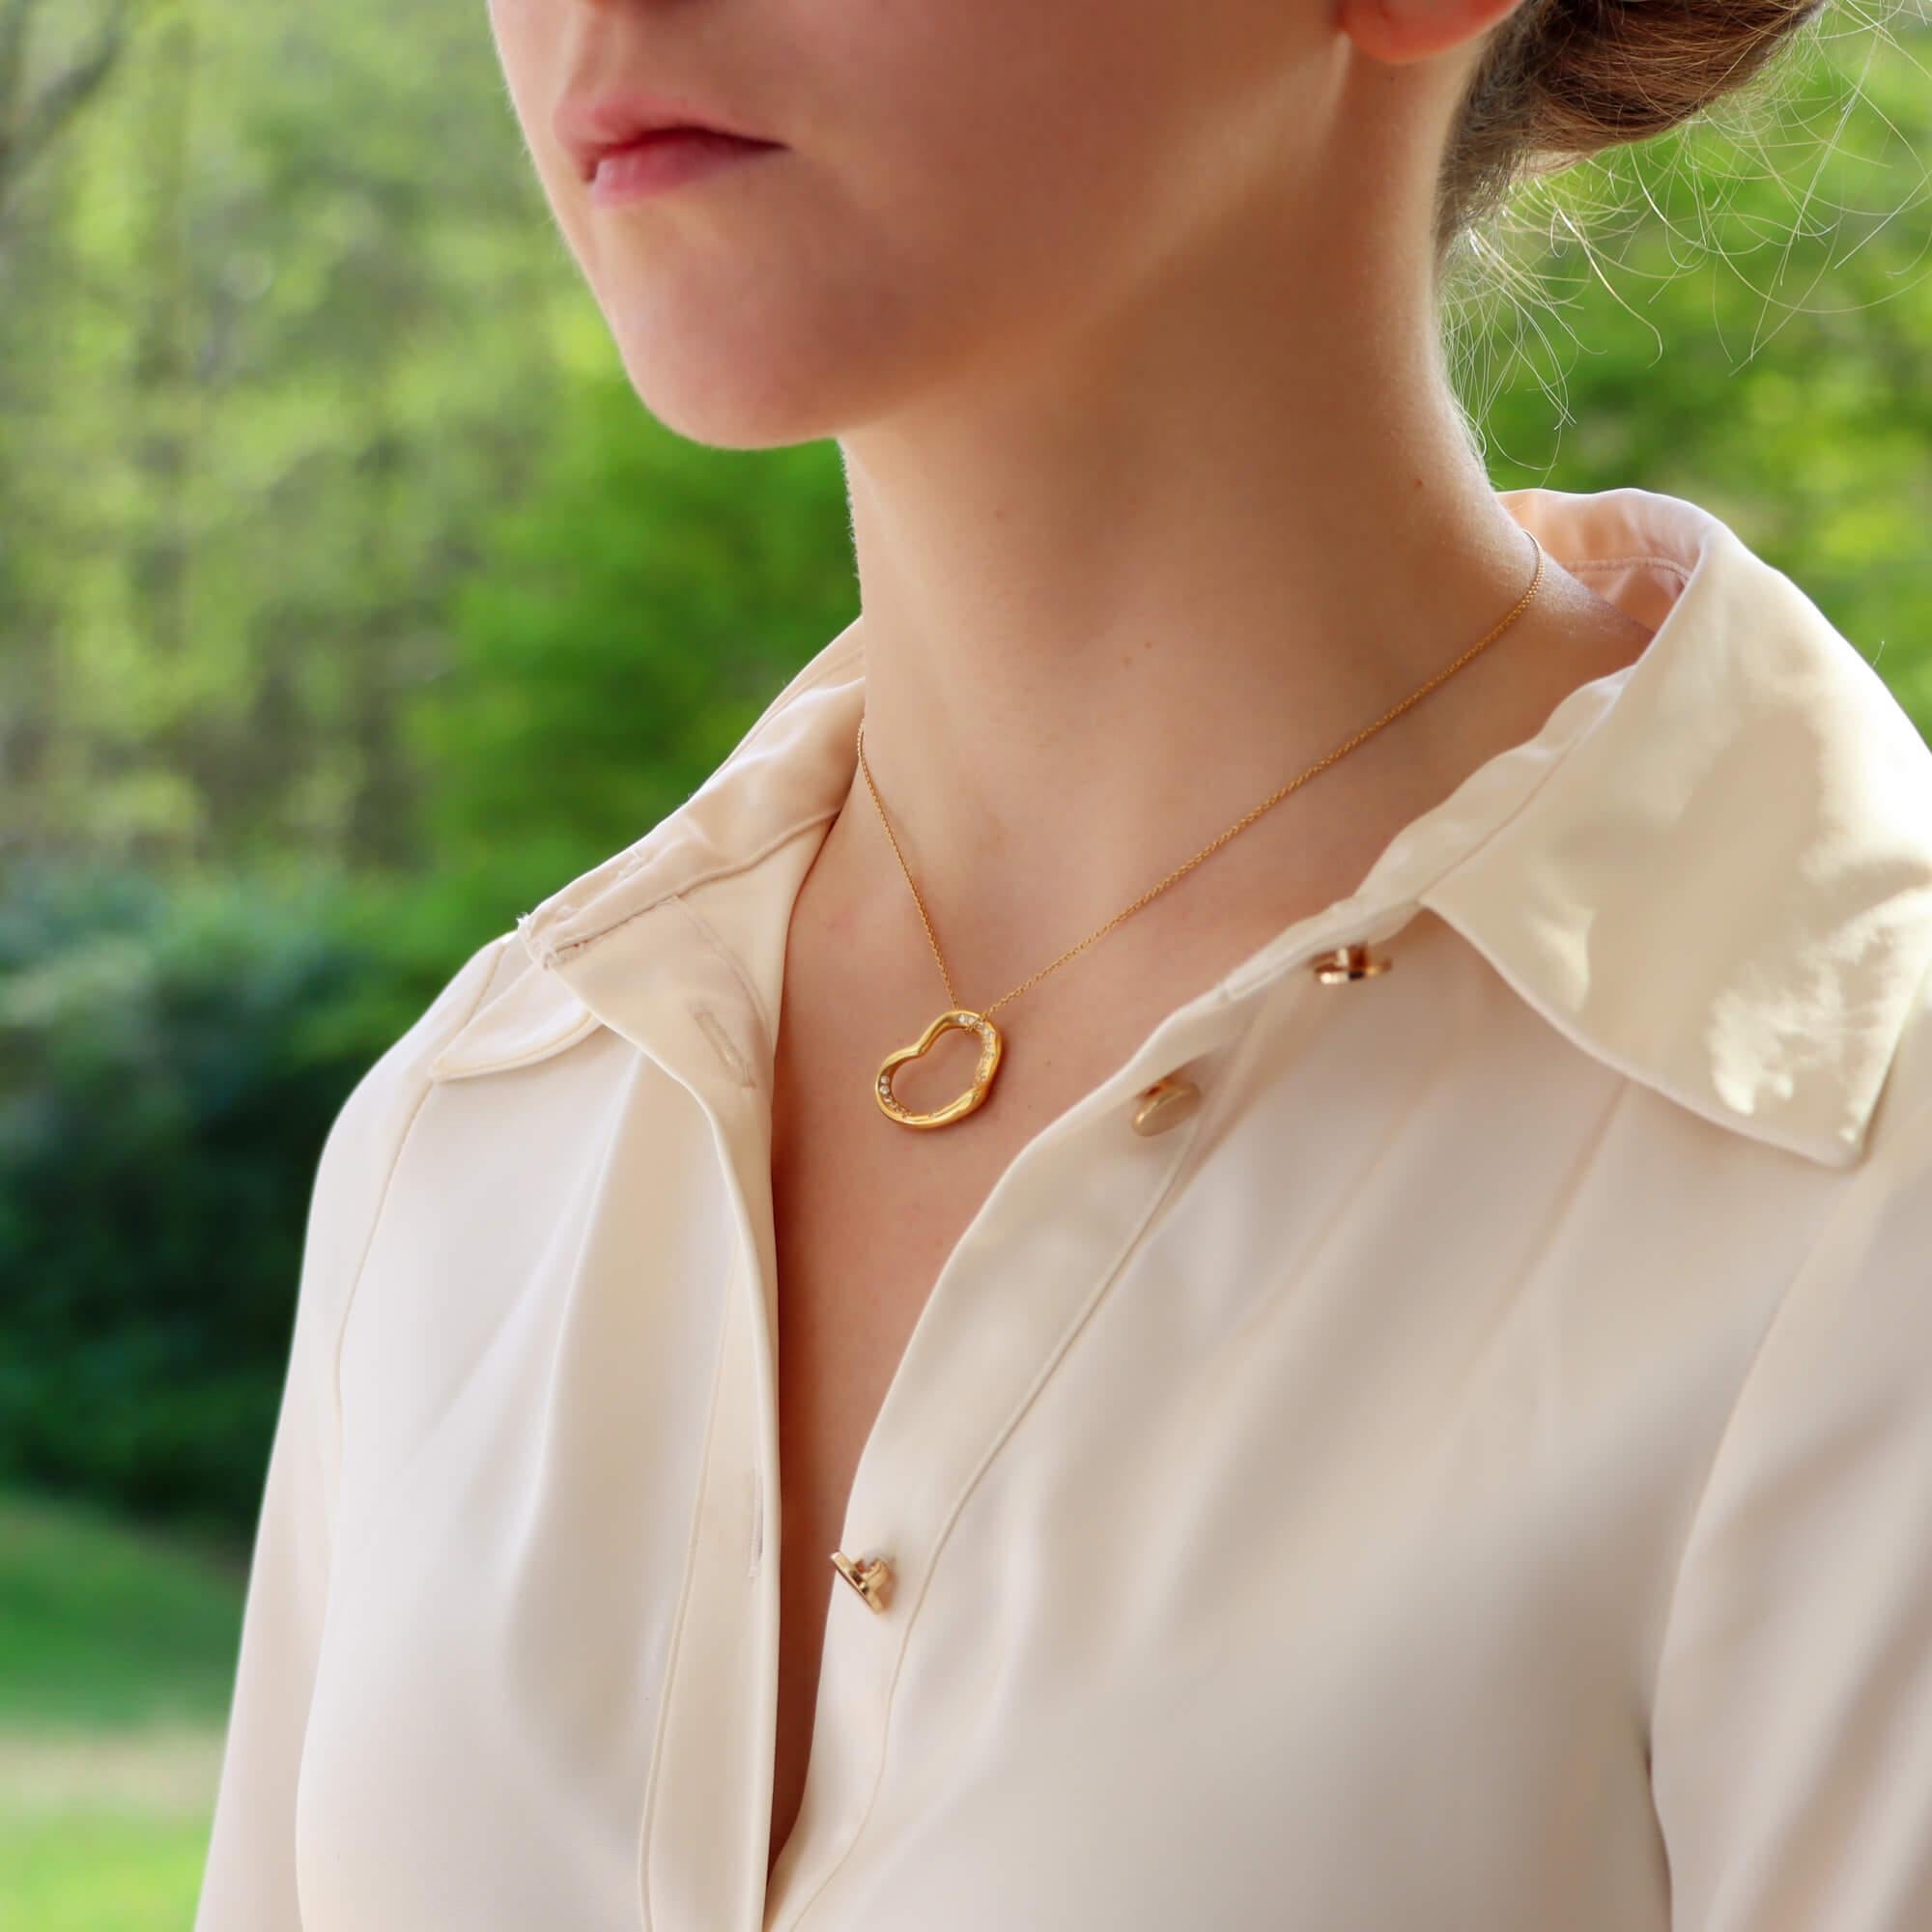 Magnifique collier vintage Elsa Peretti for Tiffany & Co. à cœur ouvert en or jaune 18 carats.

Le pendentif représente le motif emblématique du cœur ouvert d'Elsa Peretti et est serti de 36 diamants ronds de taille brillant. Le pendentif est